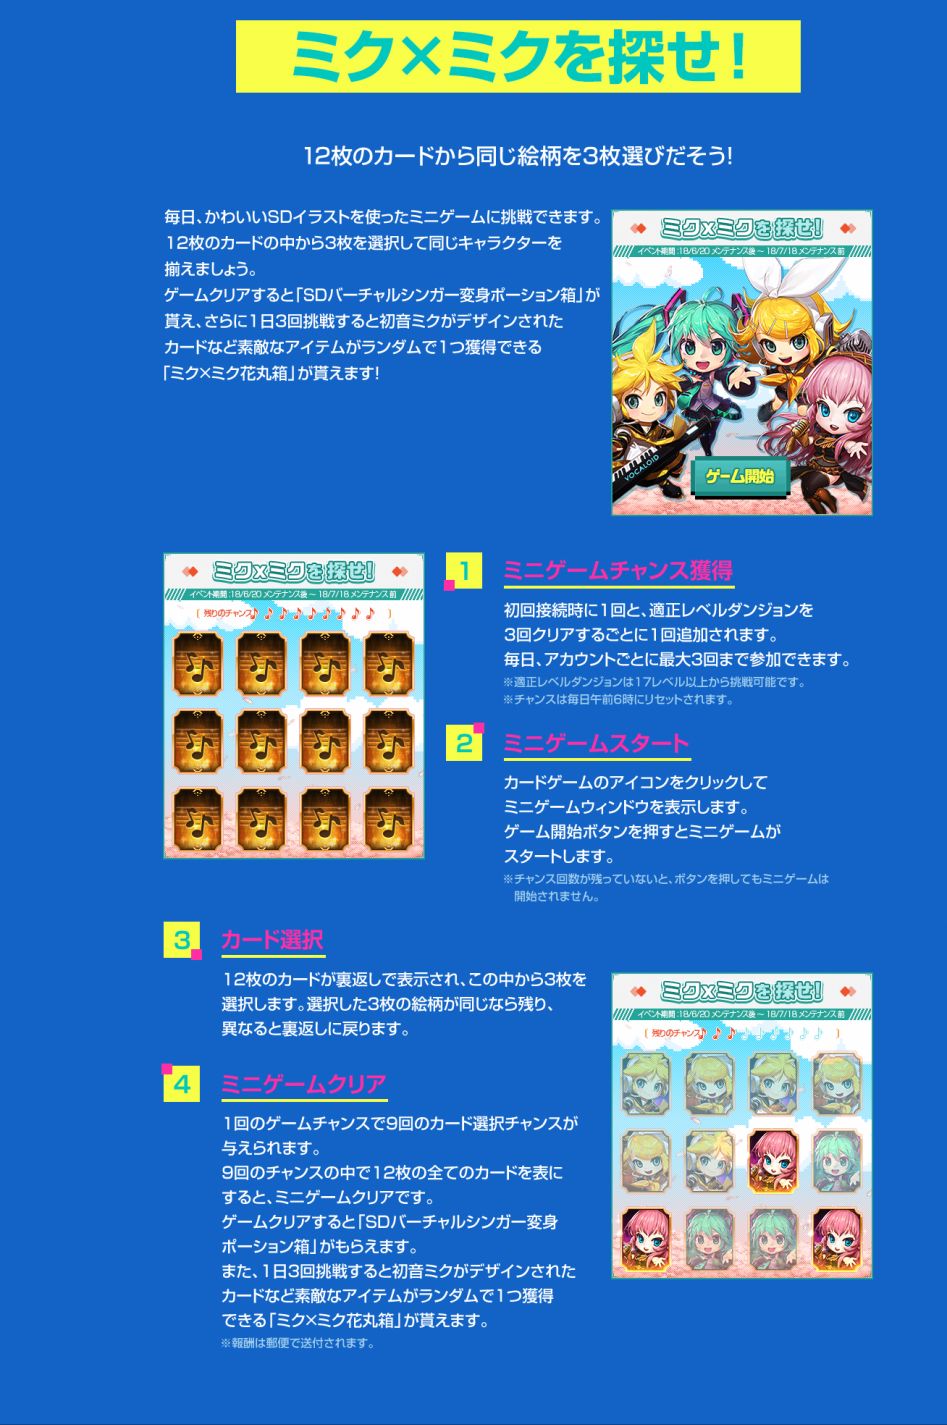 screenshot-arad.nexon.co.jp-2018.06.20-18-07-04.png